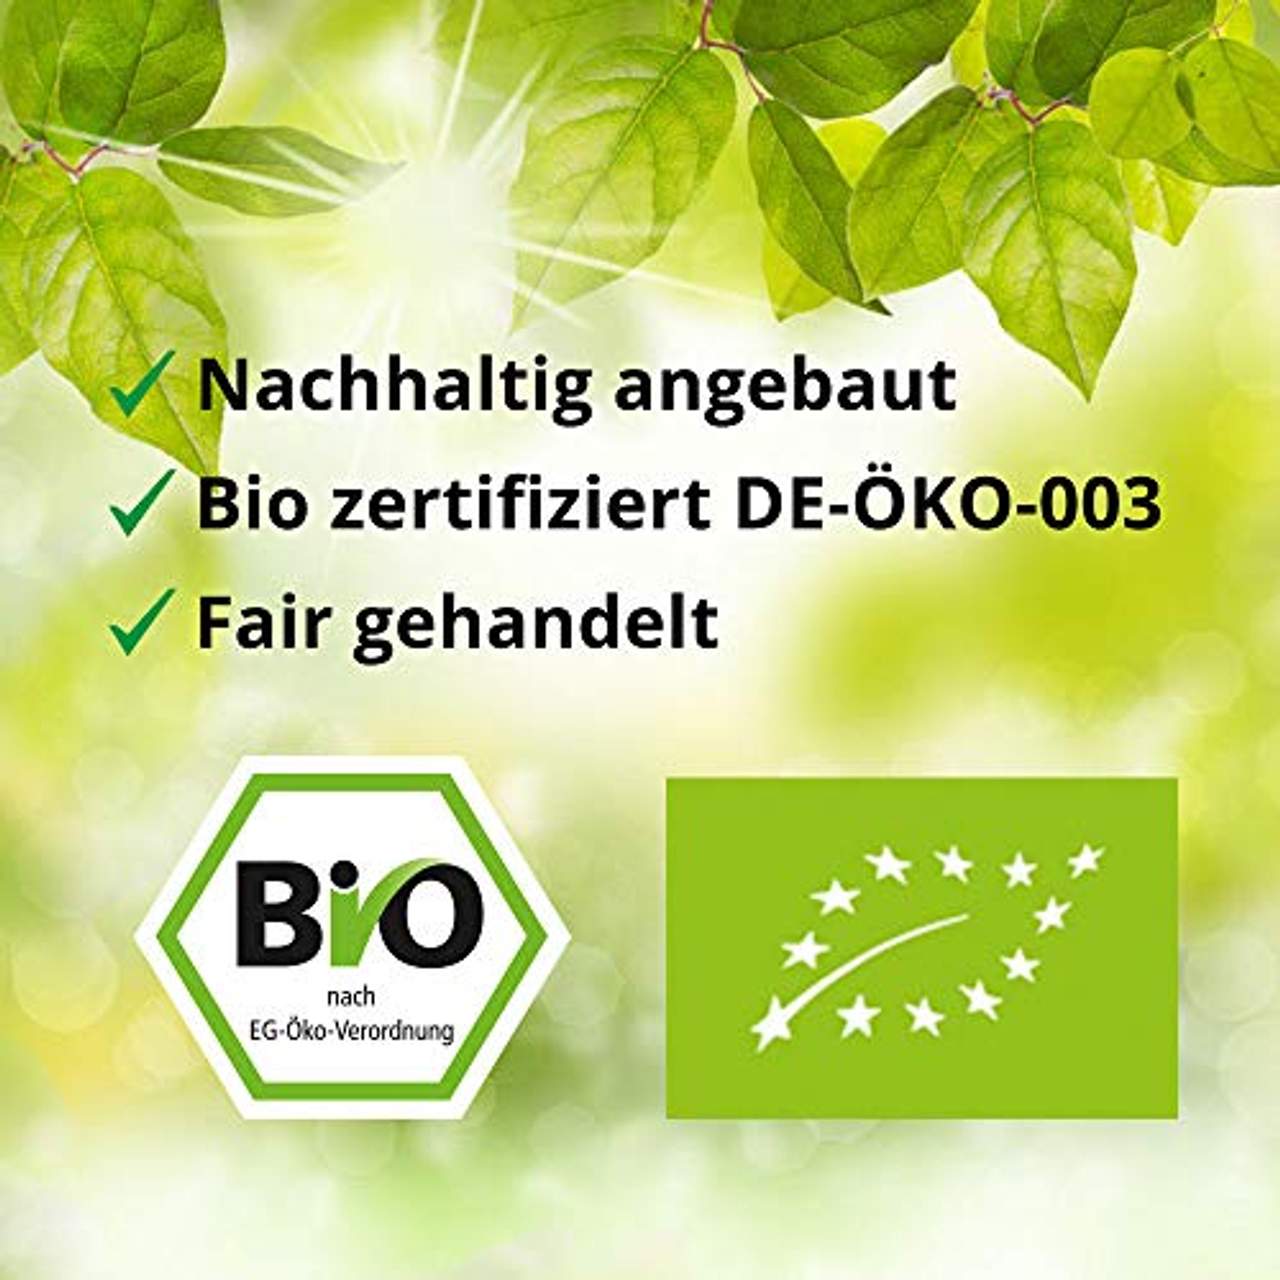 Bio Baobab 1 Kg Beutel Fruchtpulver 100%  